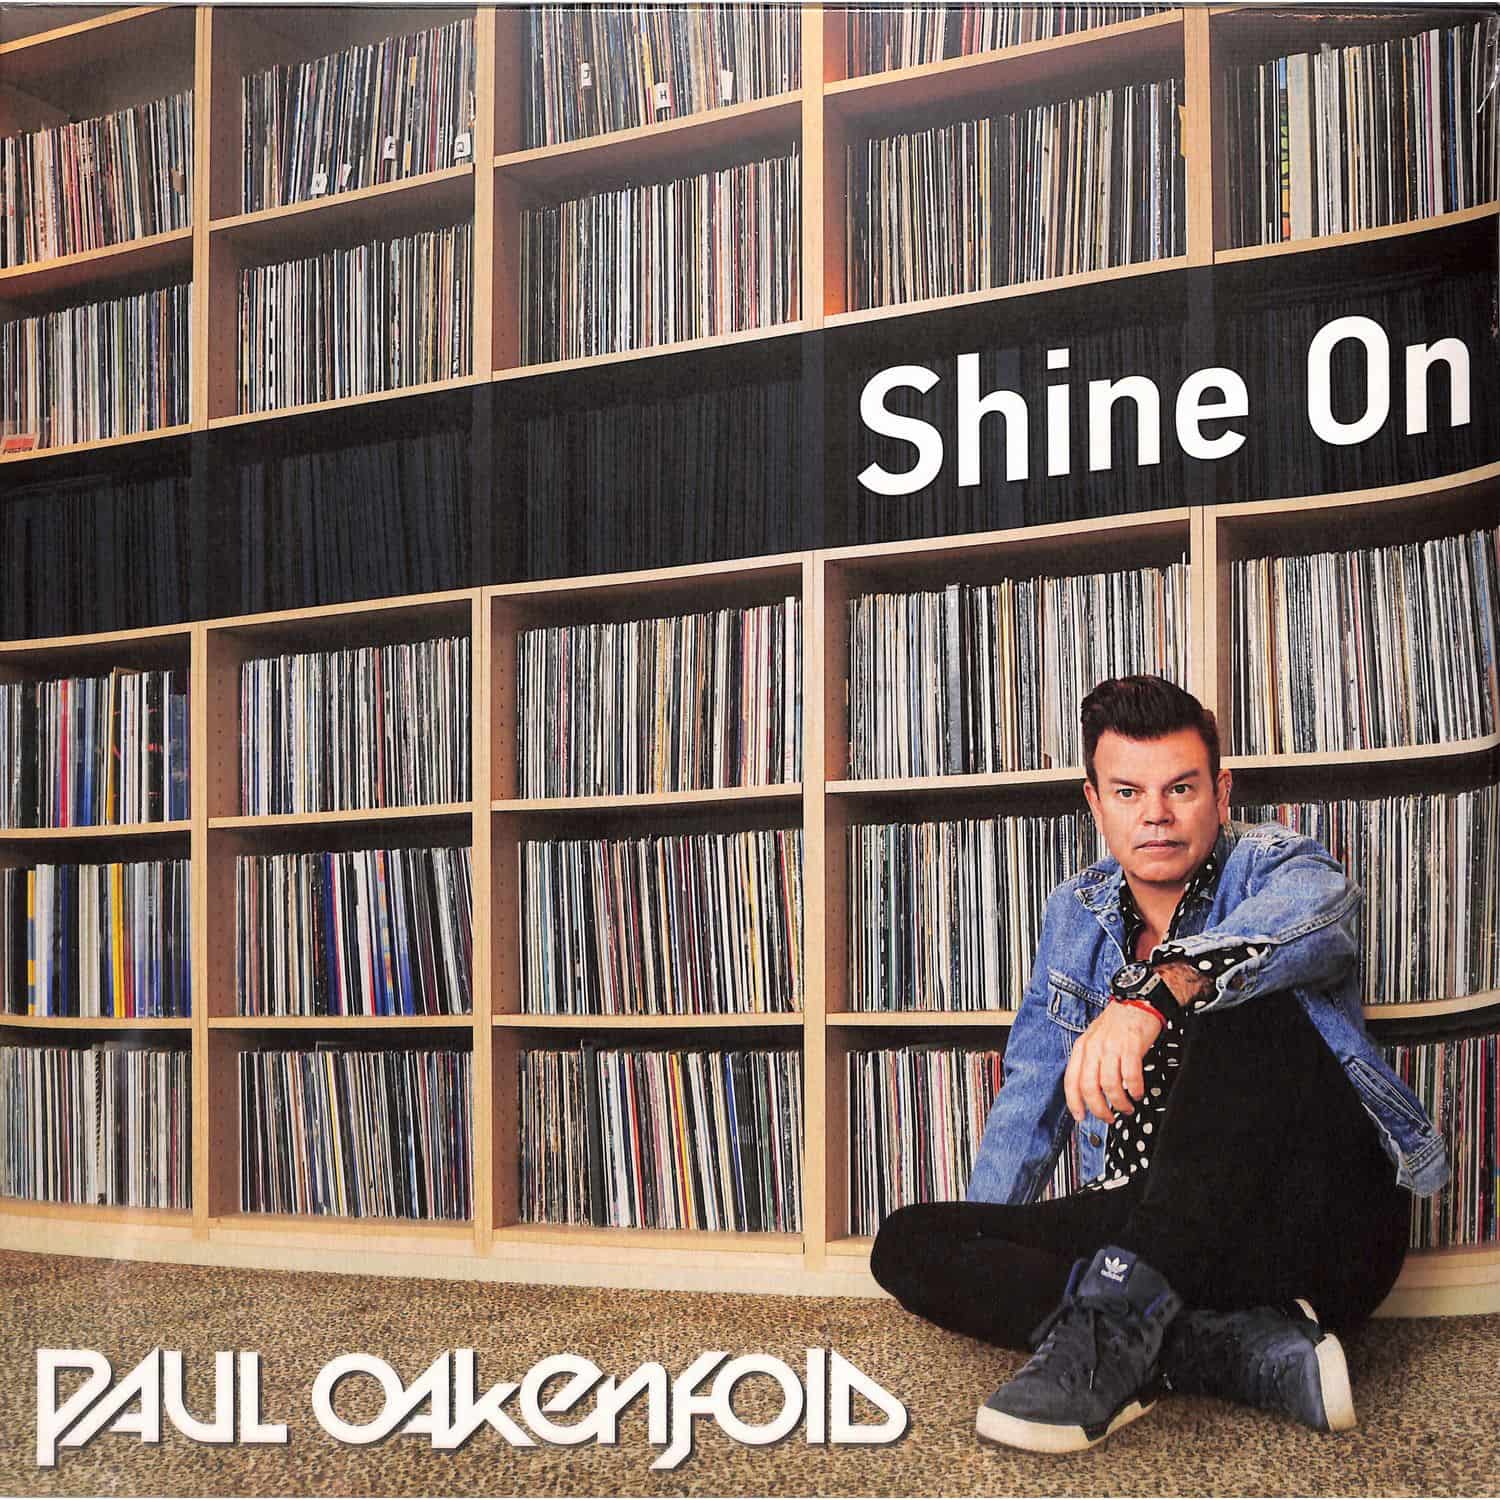 Paul Oakenfold - SHINE ON 